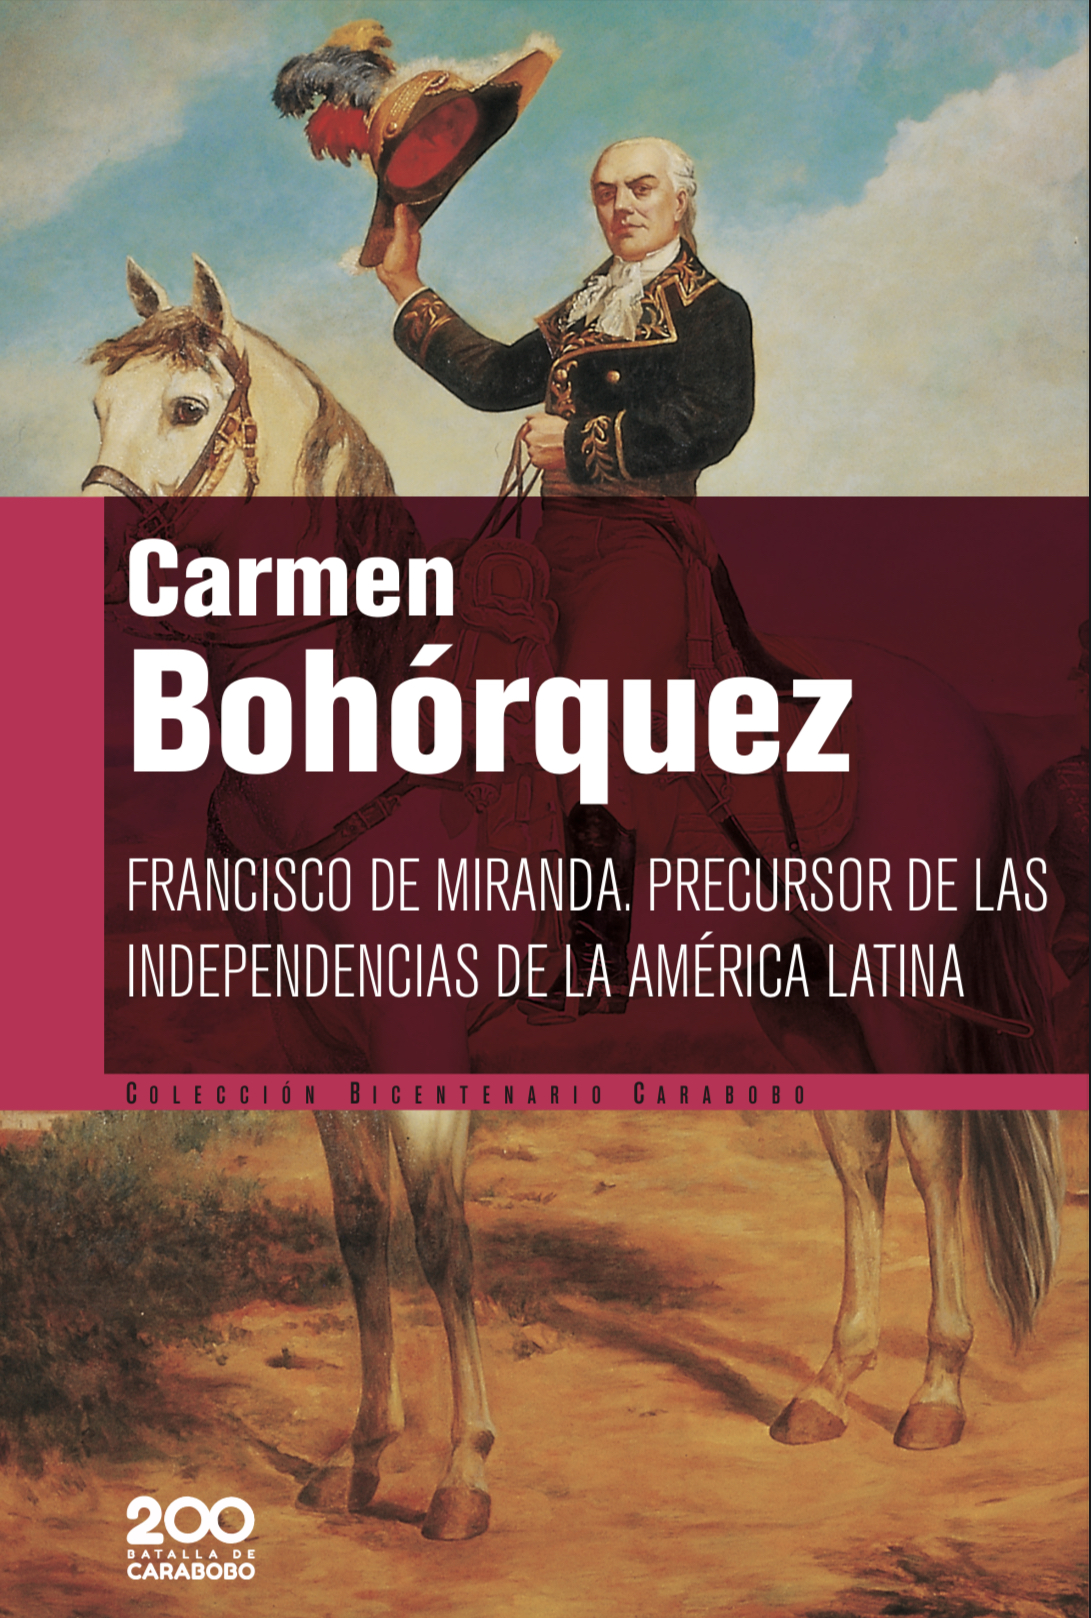 Francisco de Miranda. Precursor de las independencias de la América Latina